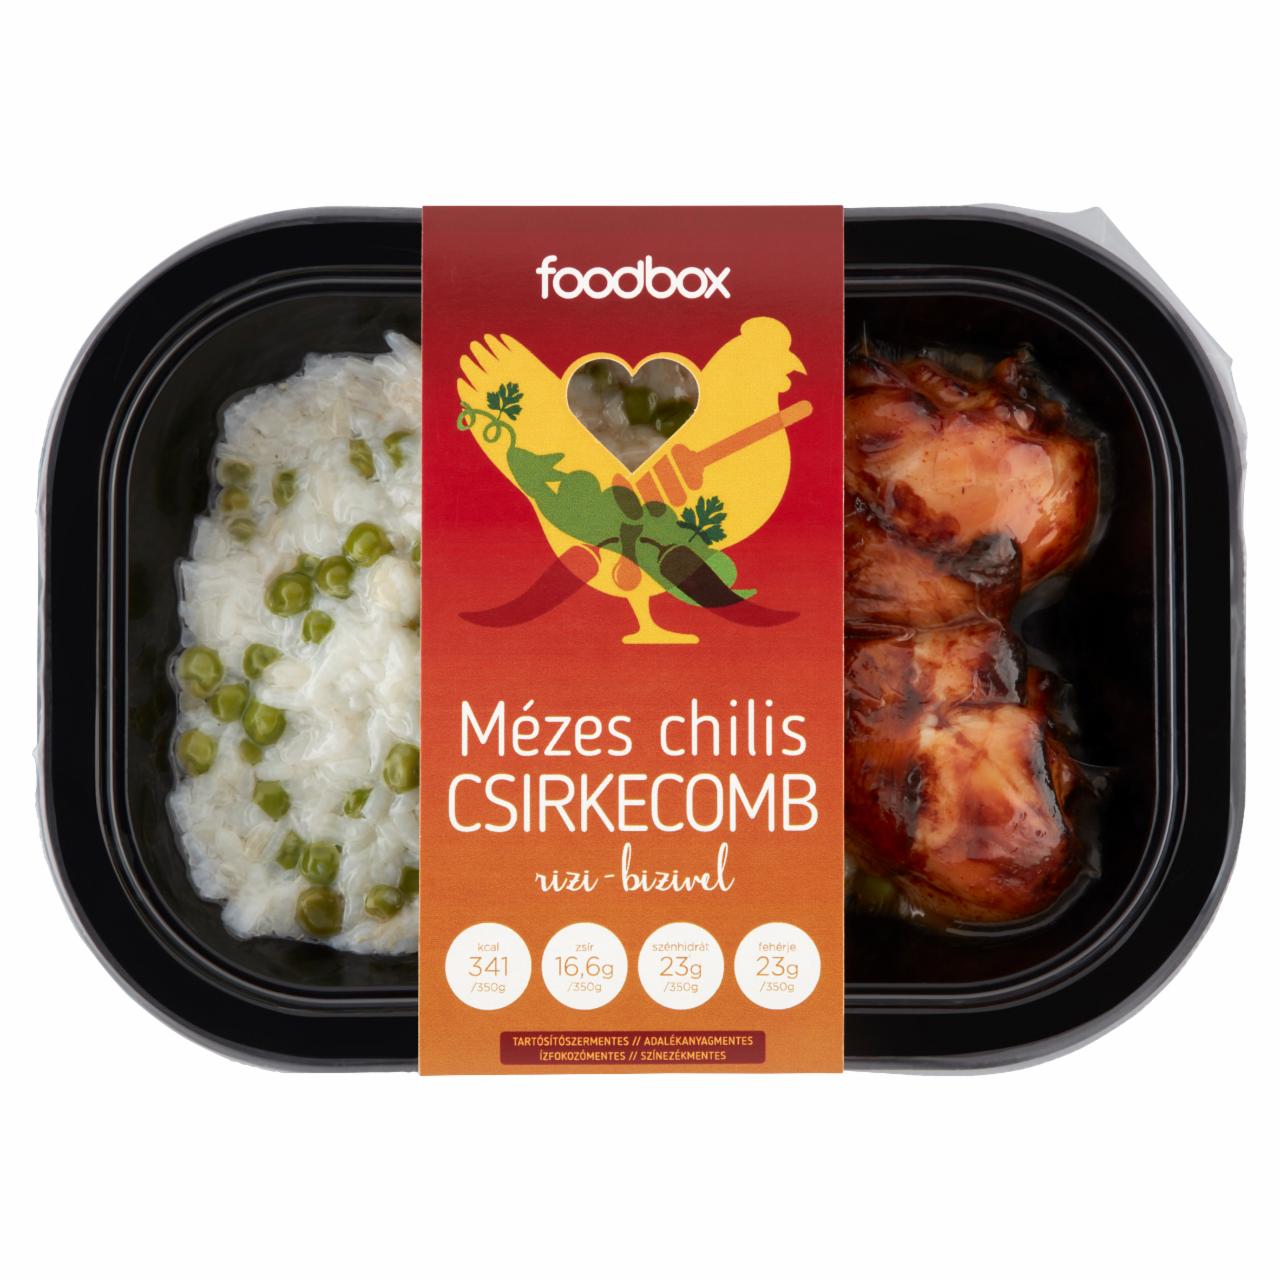 Képek - Mézes chilis csirkecomb rizi-bizivel Foodbox